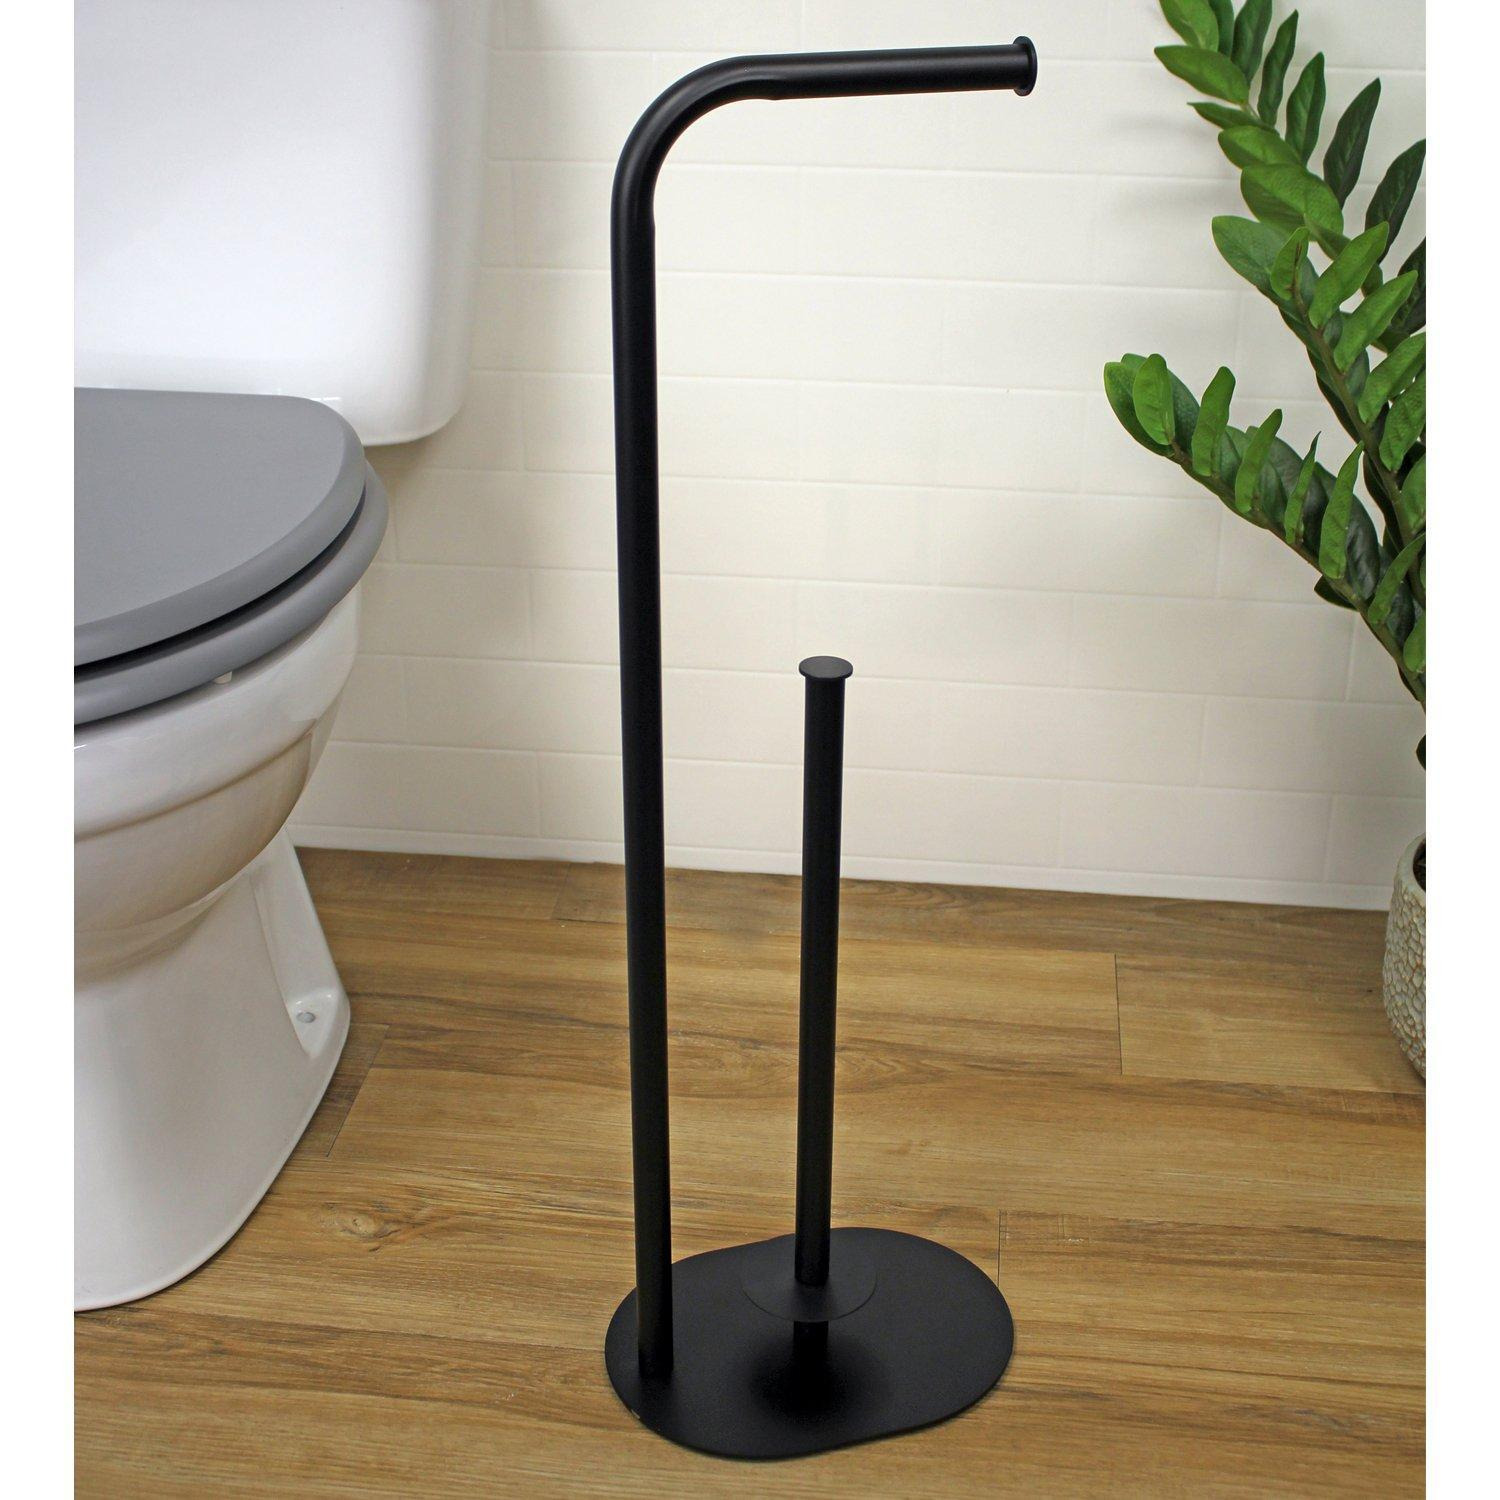 'Aspen' Black Toilet Roll & Spare Paper Holder Freestanding - image 1